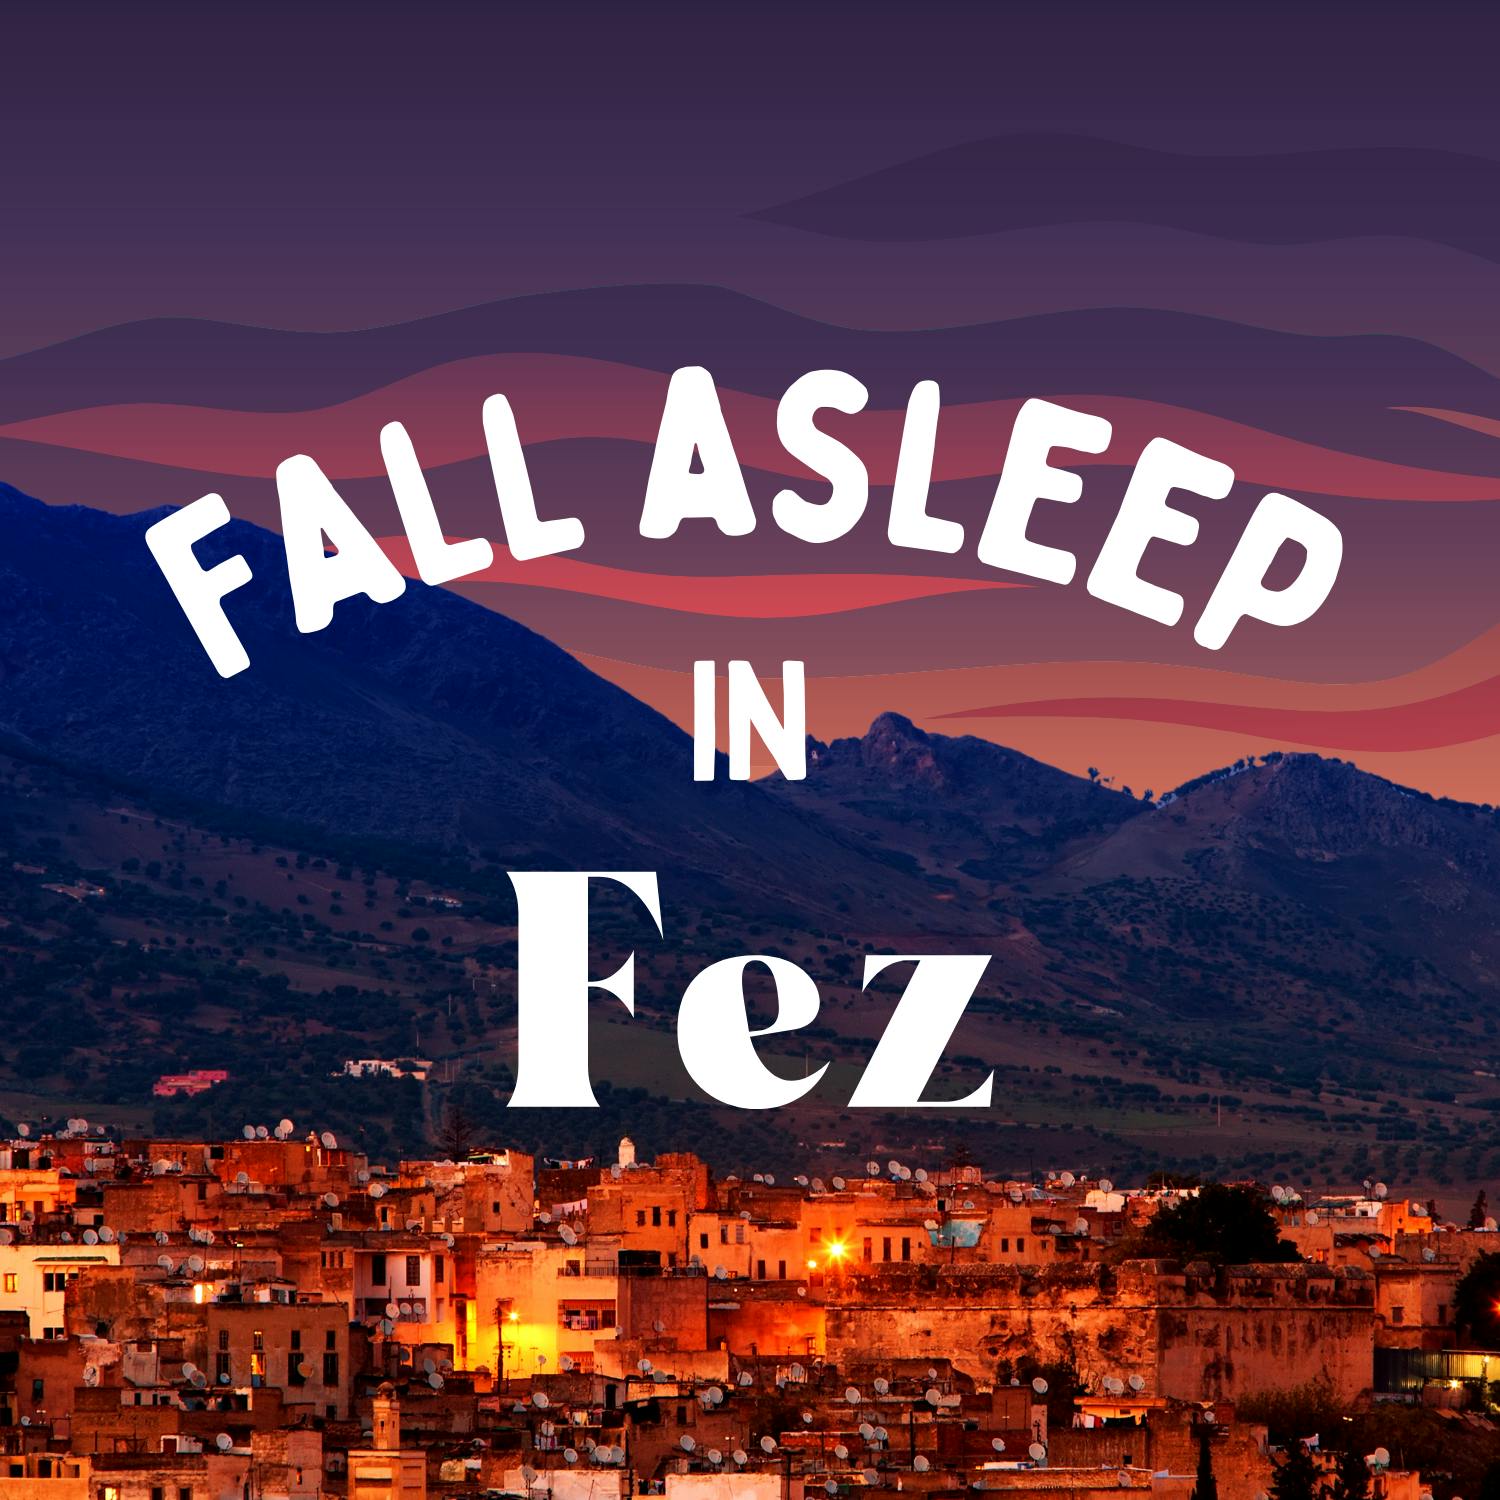 Fall Asleep in Fez